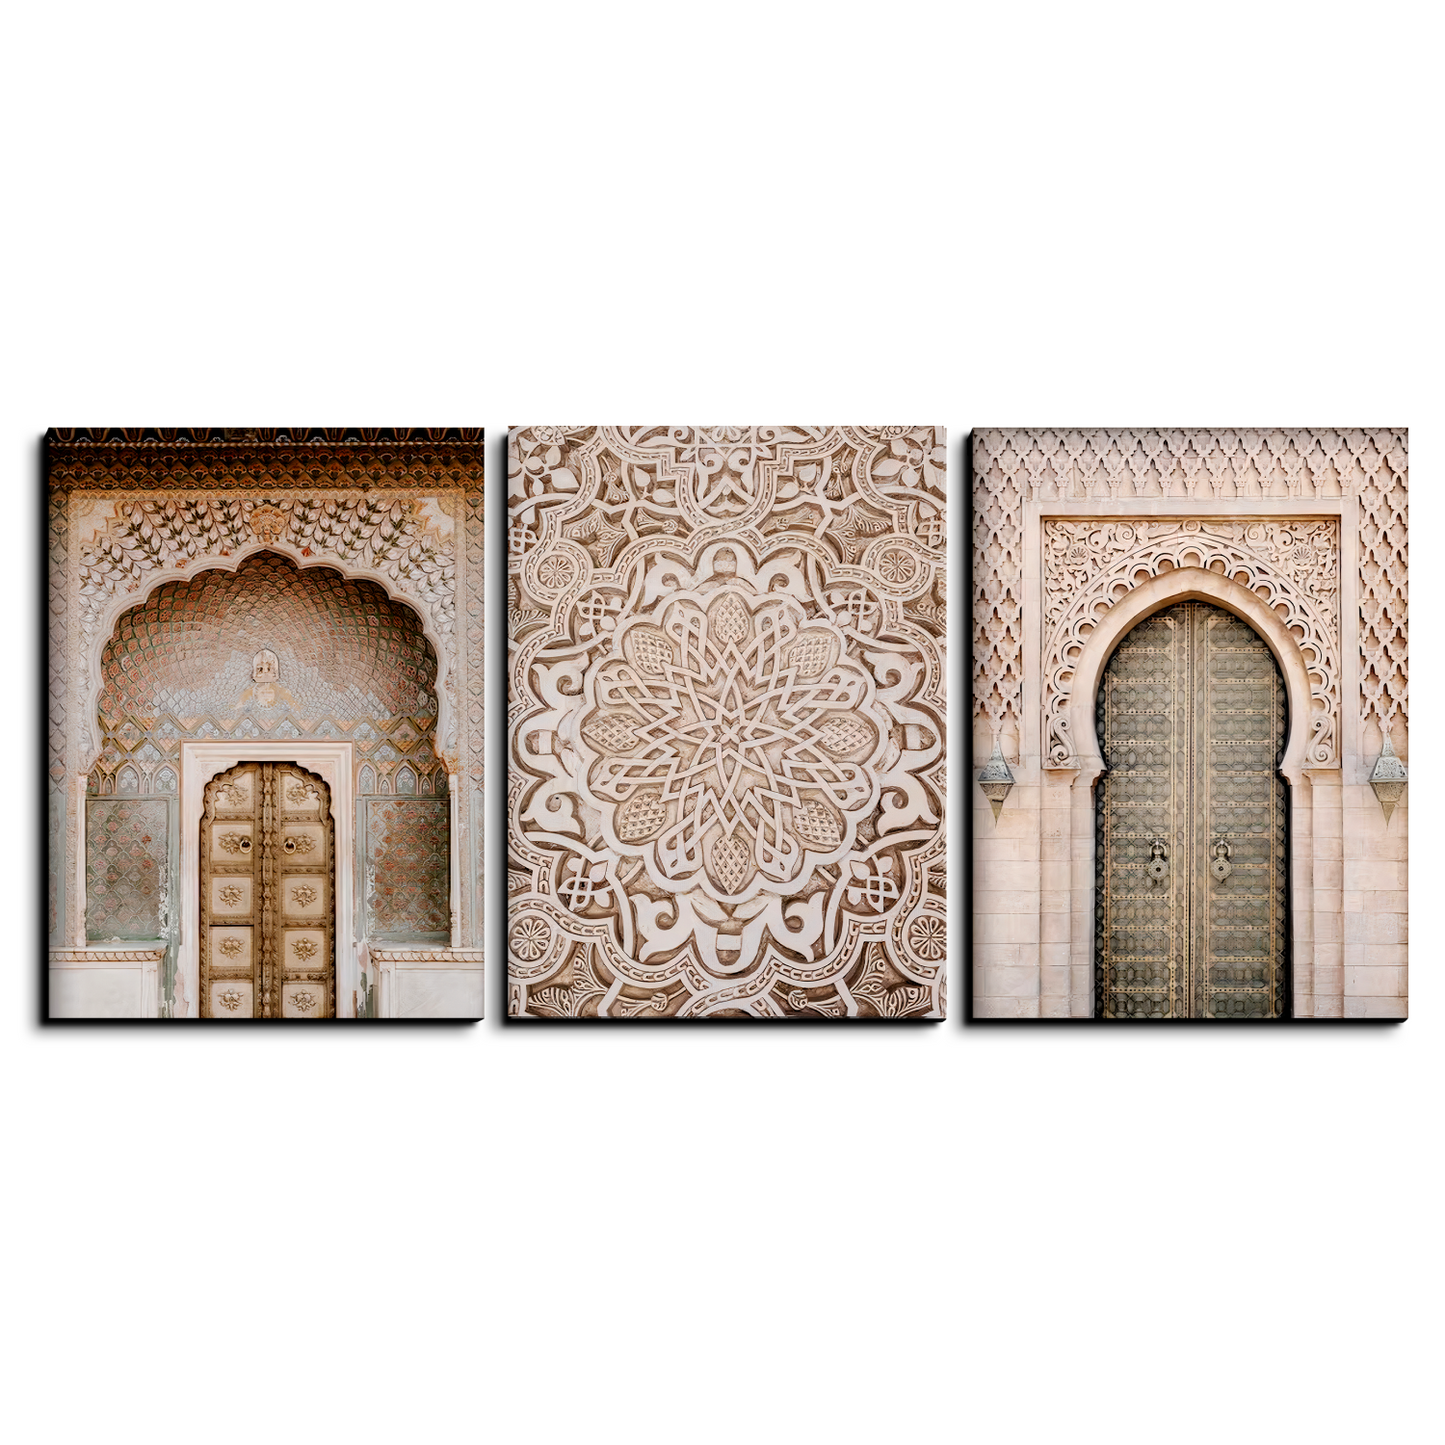 Morocco Wood Print Wall Art Set of 3